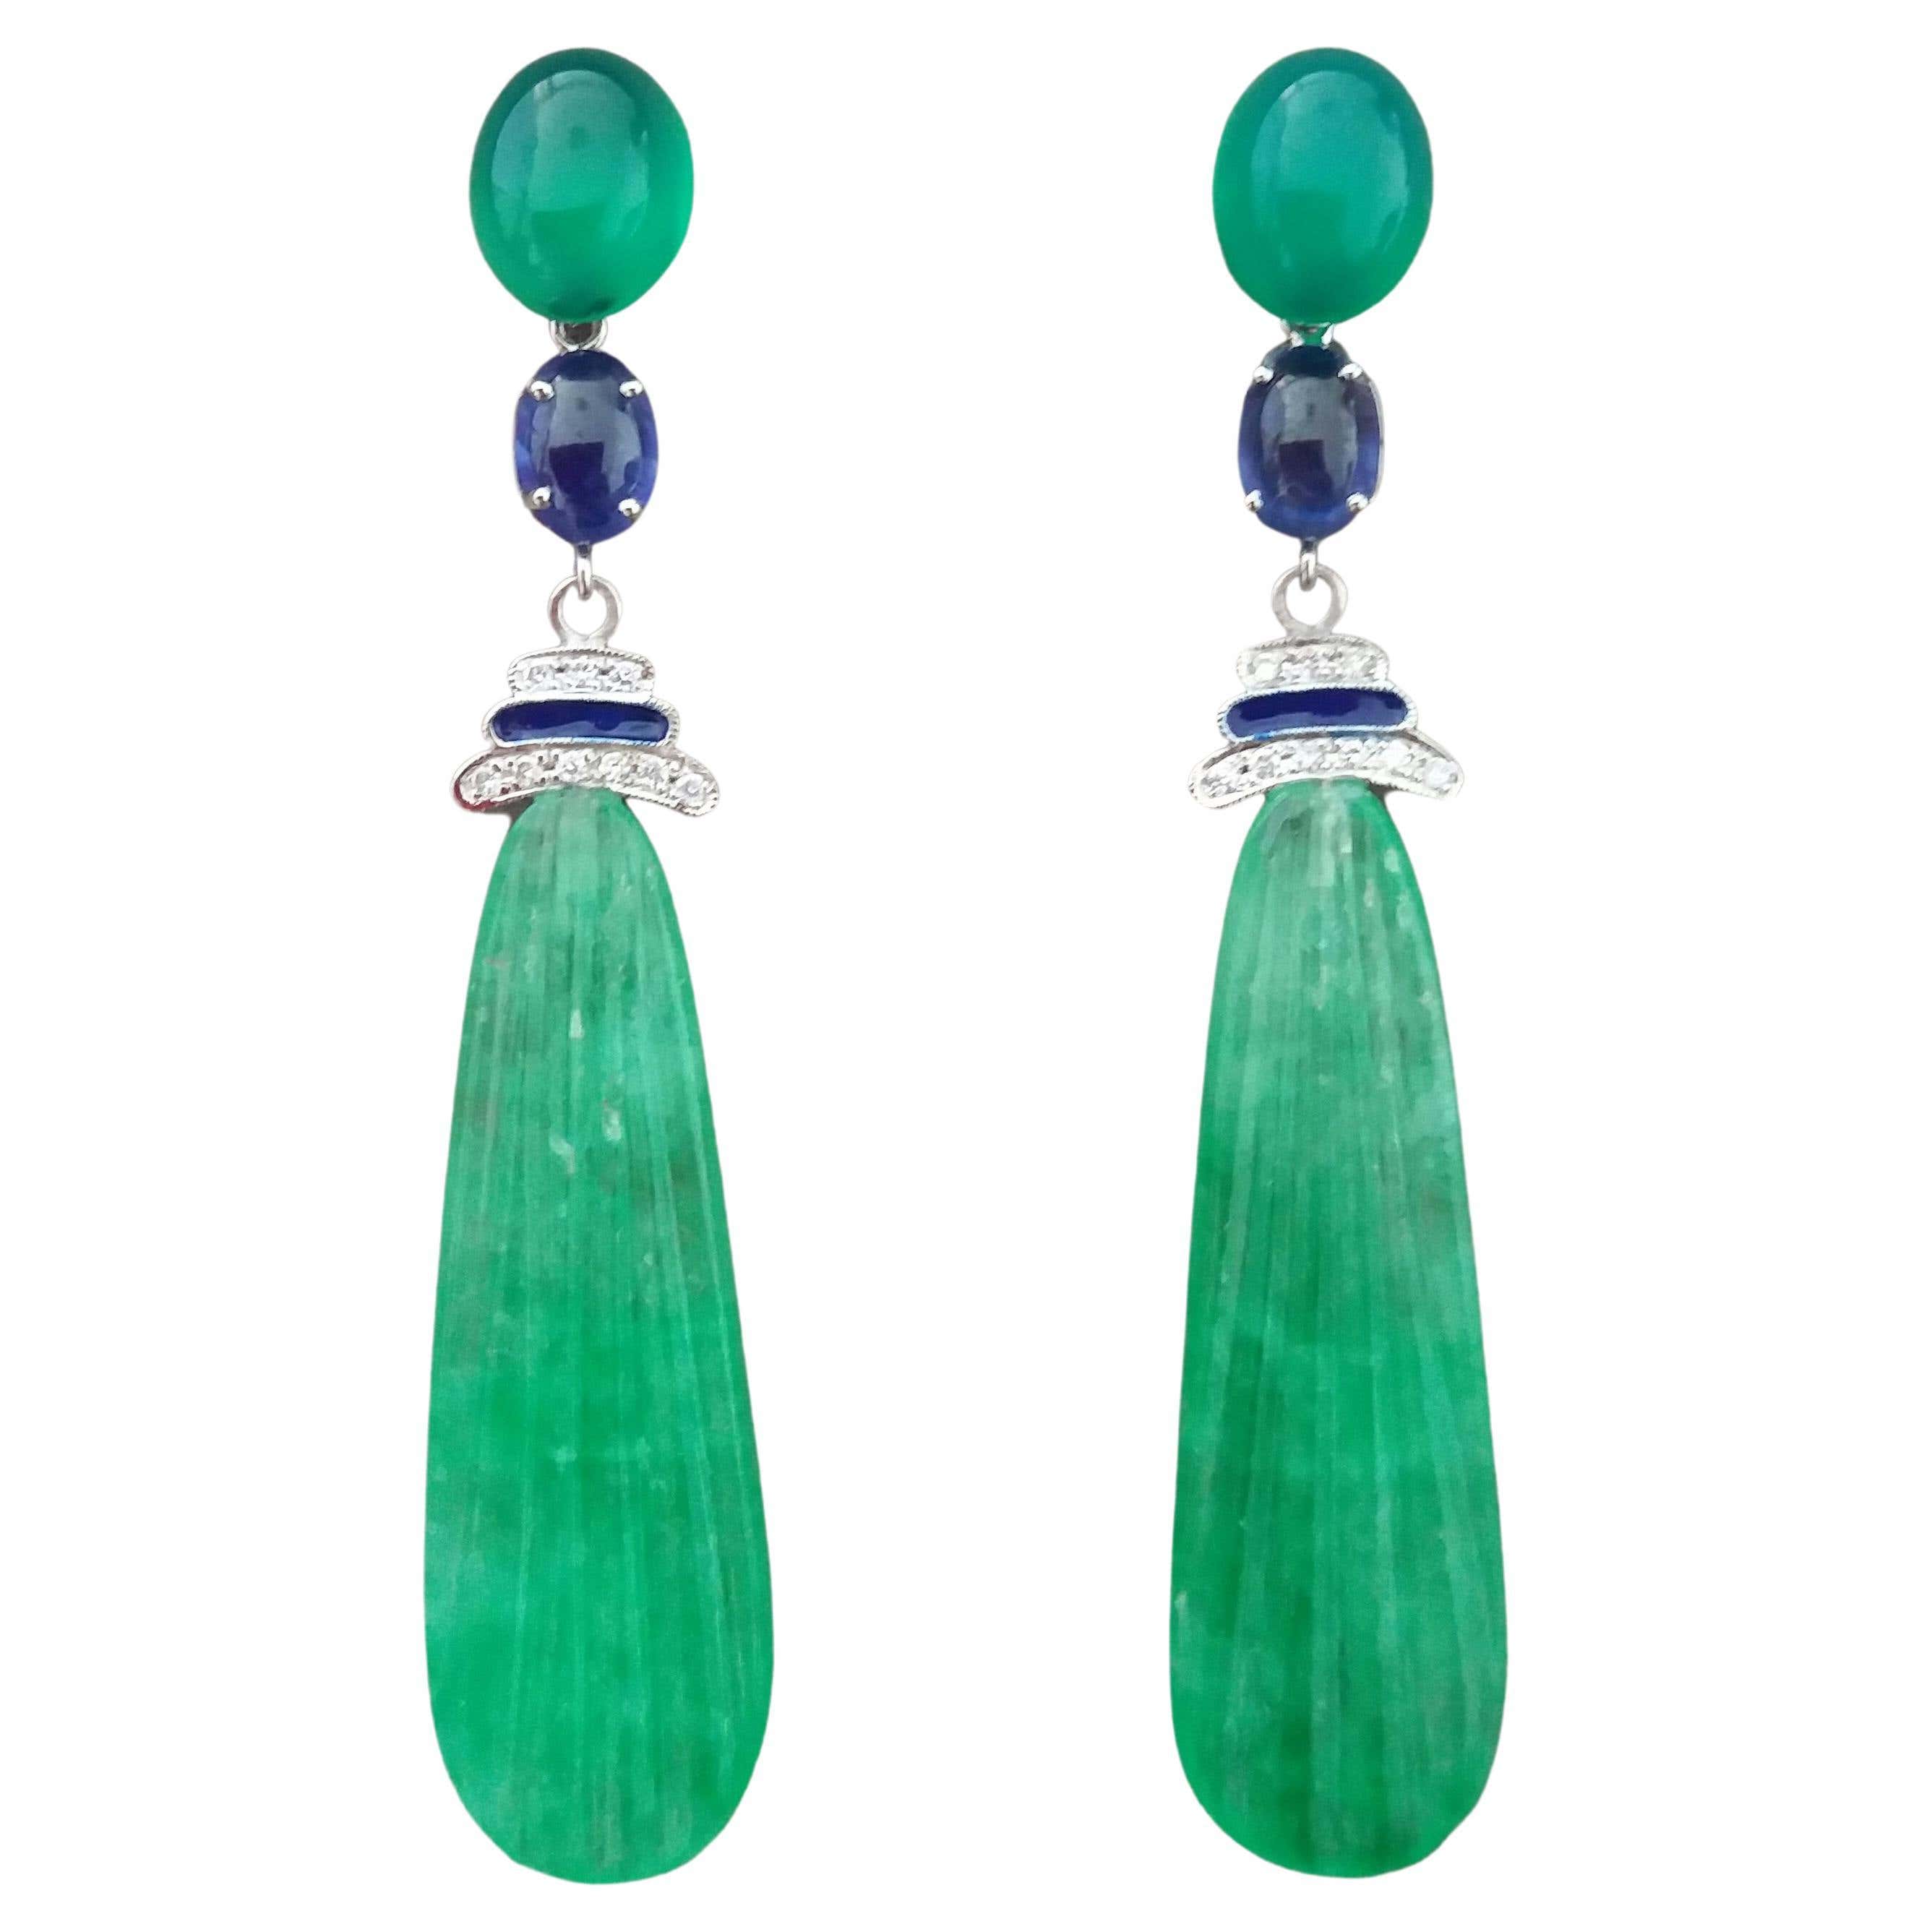 Pendientes Gotas de Jade Esmaltado Zafiro Azul Oro Onix Verde Estilo Art Déco